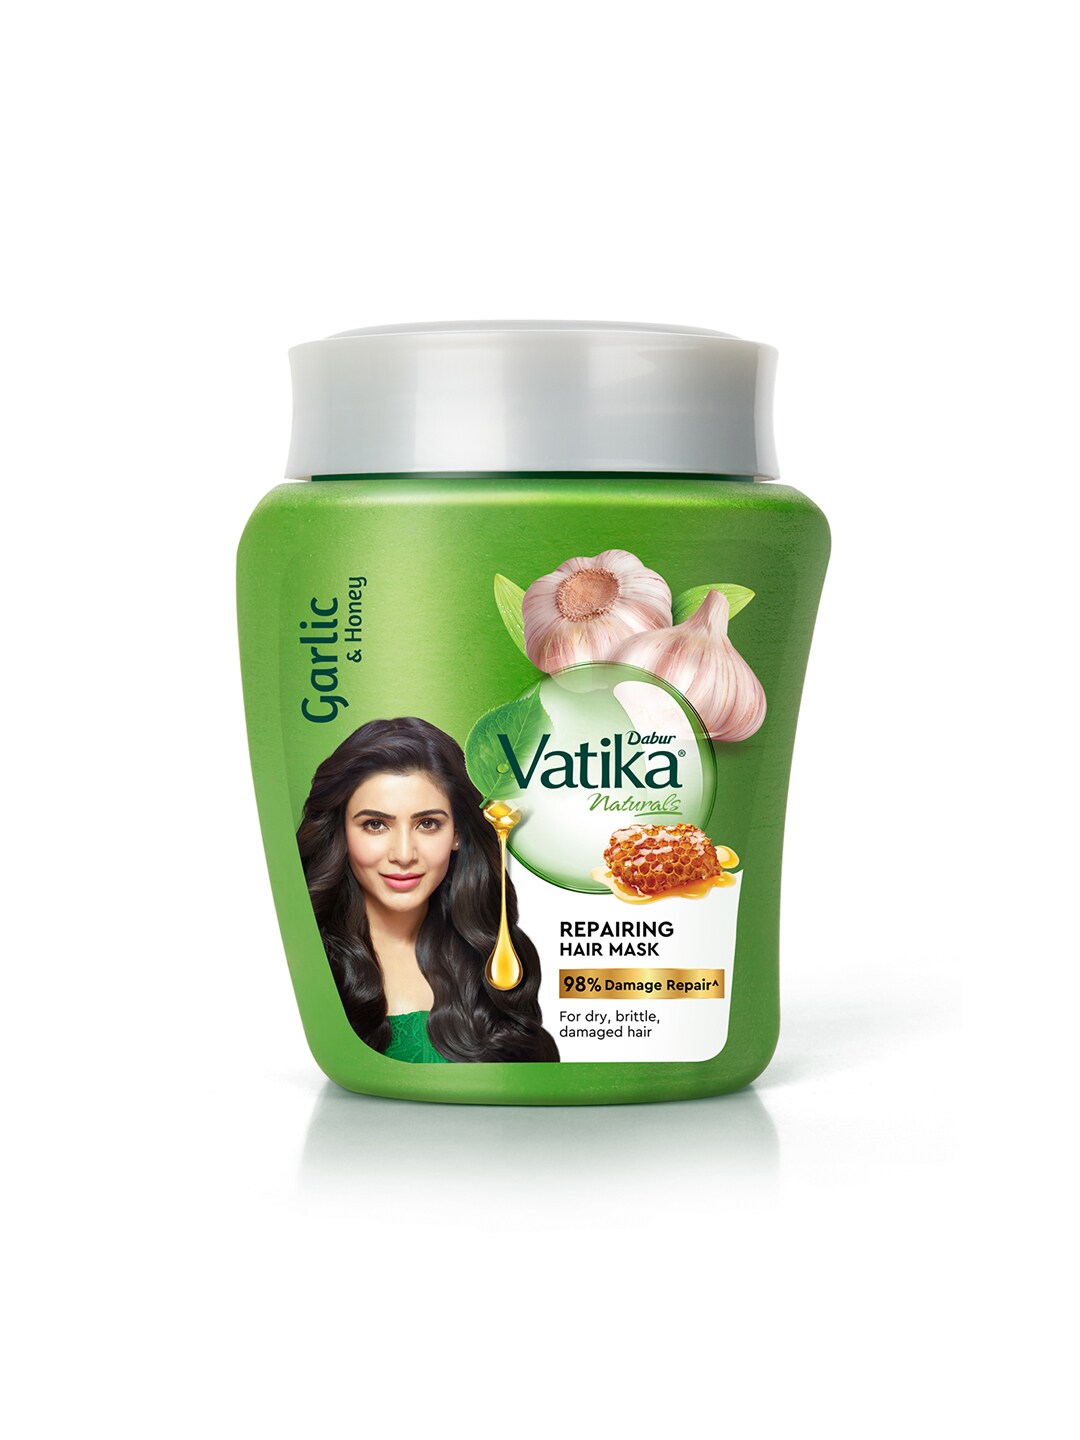 Dabur Vatika Naturals Repairing Hair Mask with Garlic & Honey -  Dealofthedayindia